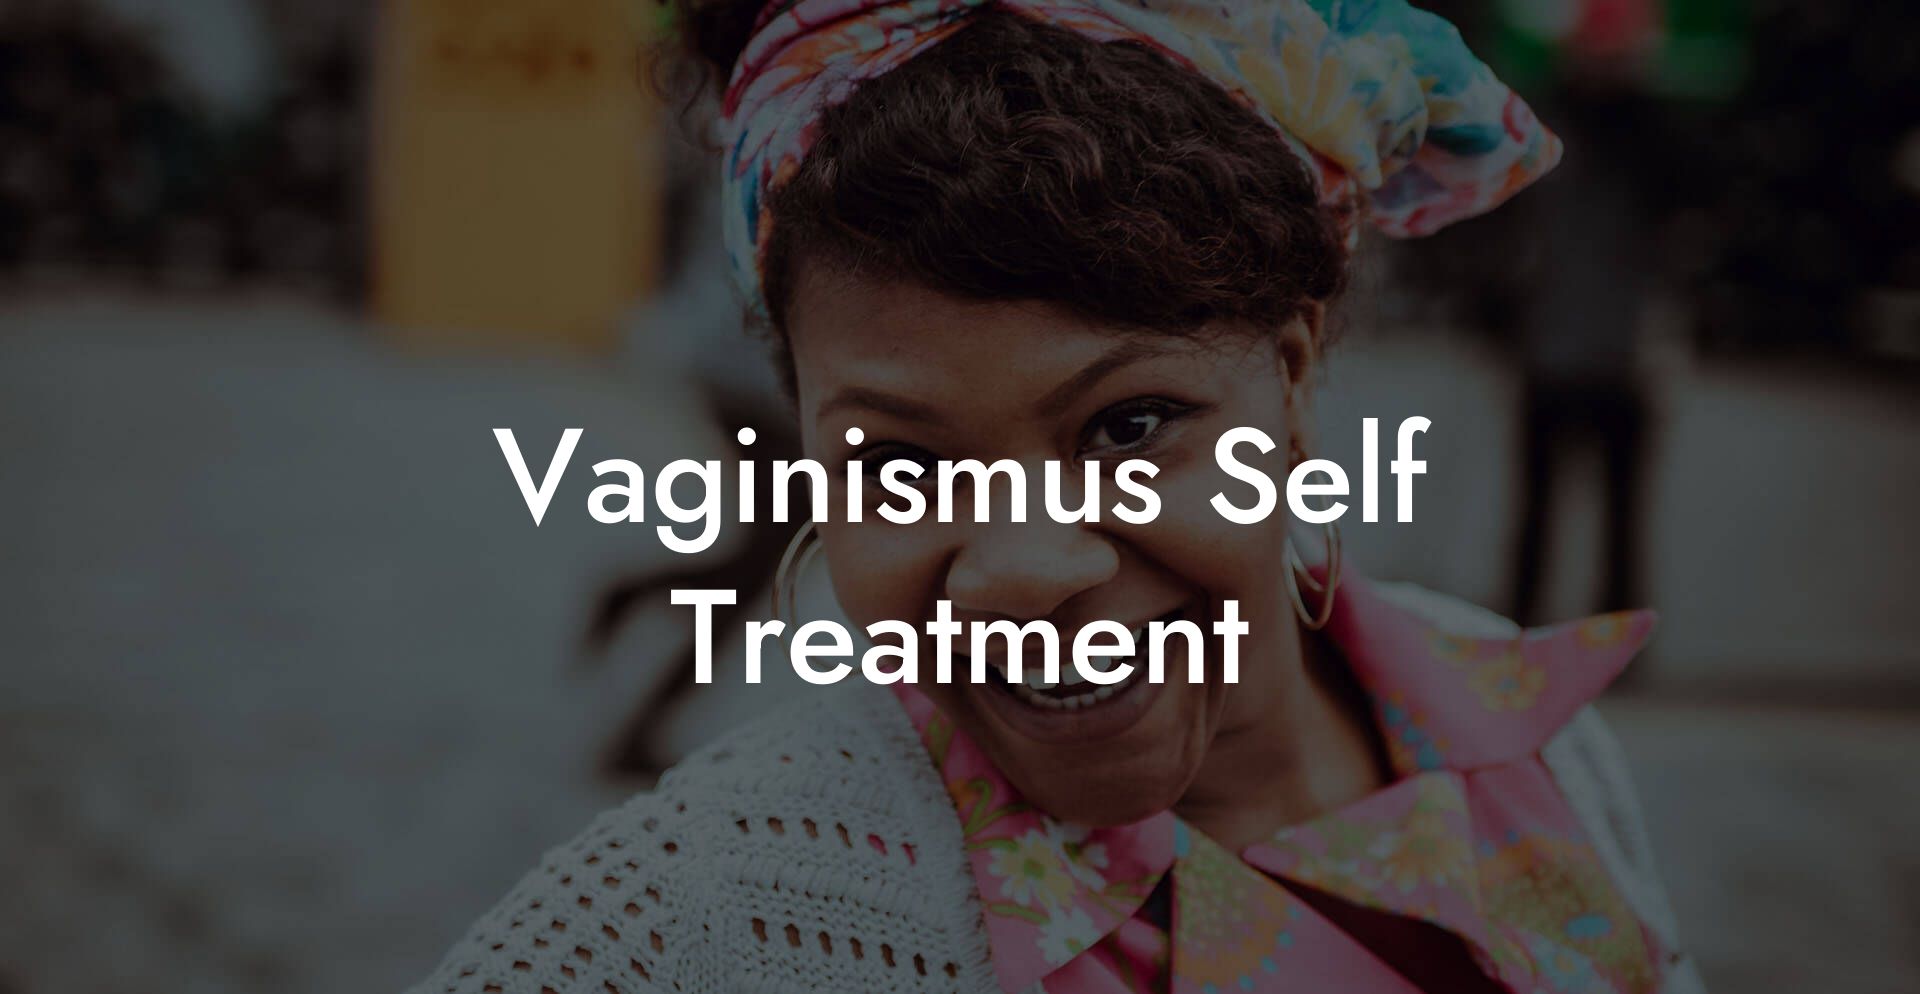 Vaginismus Self Treatment